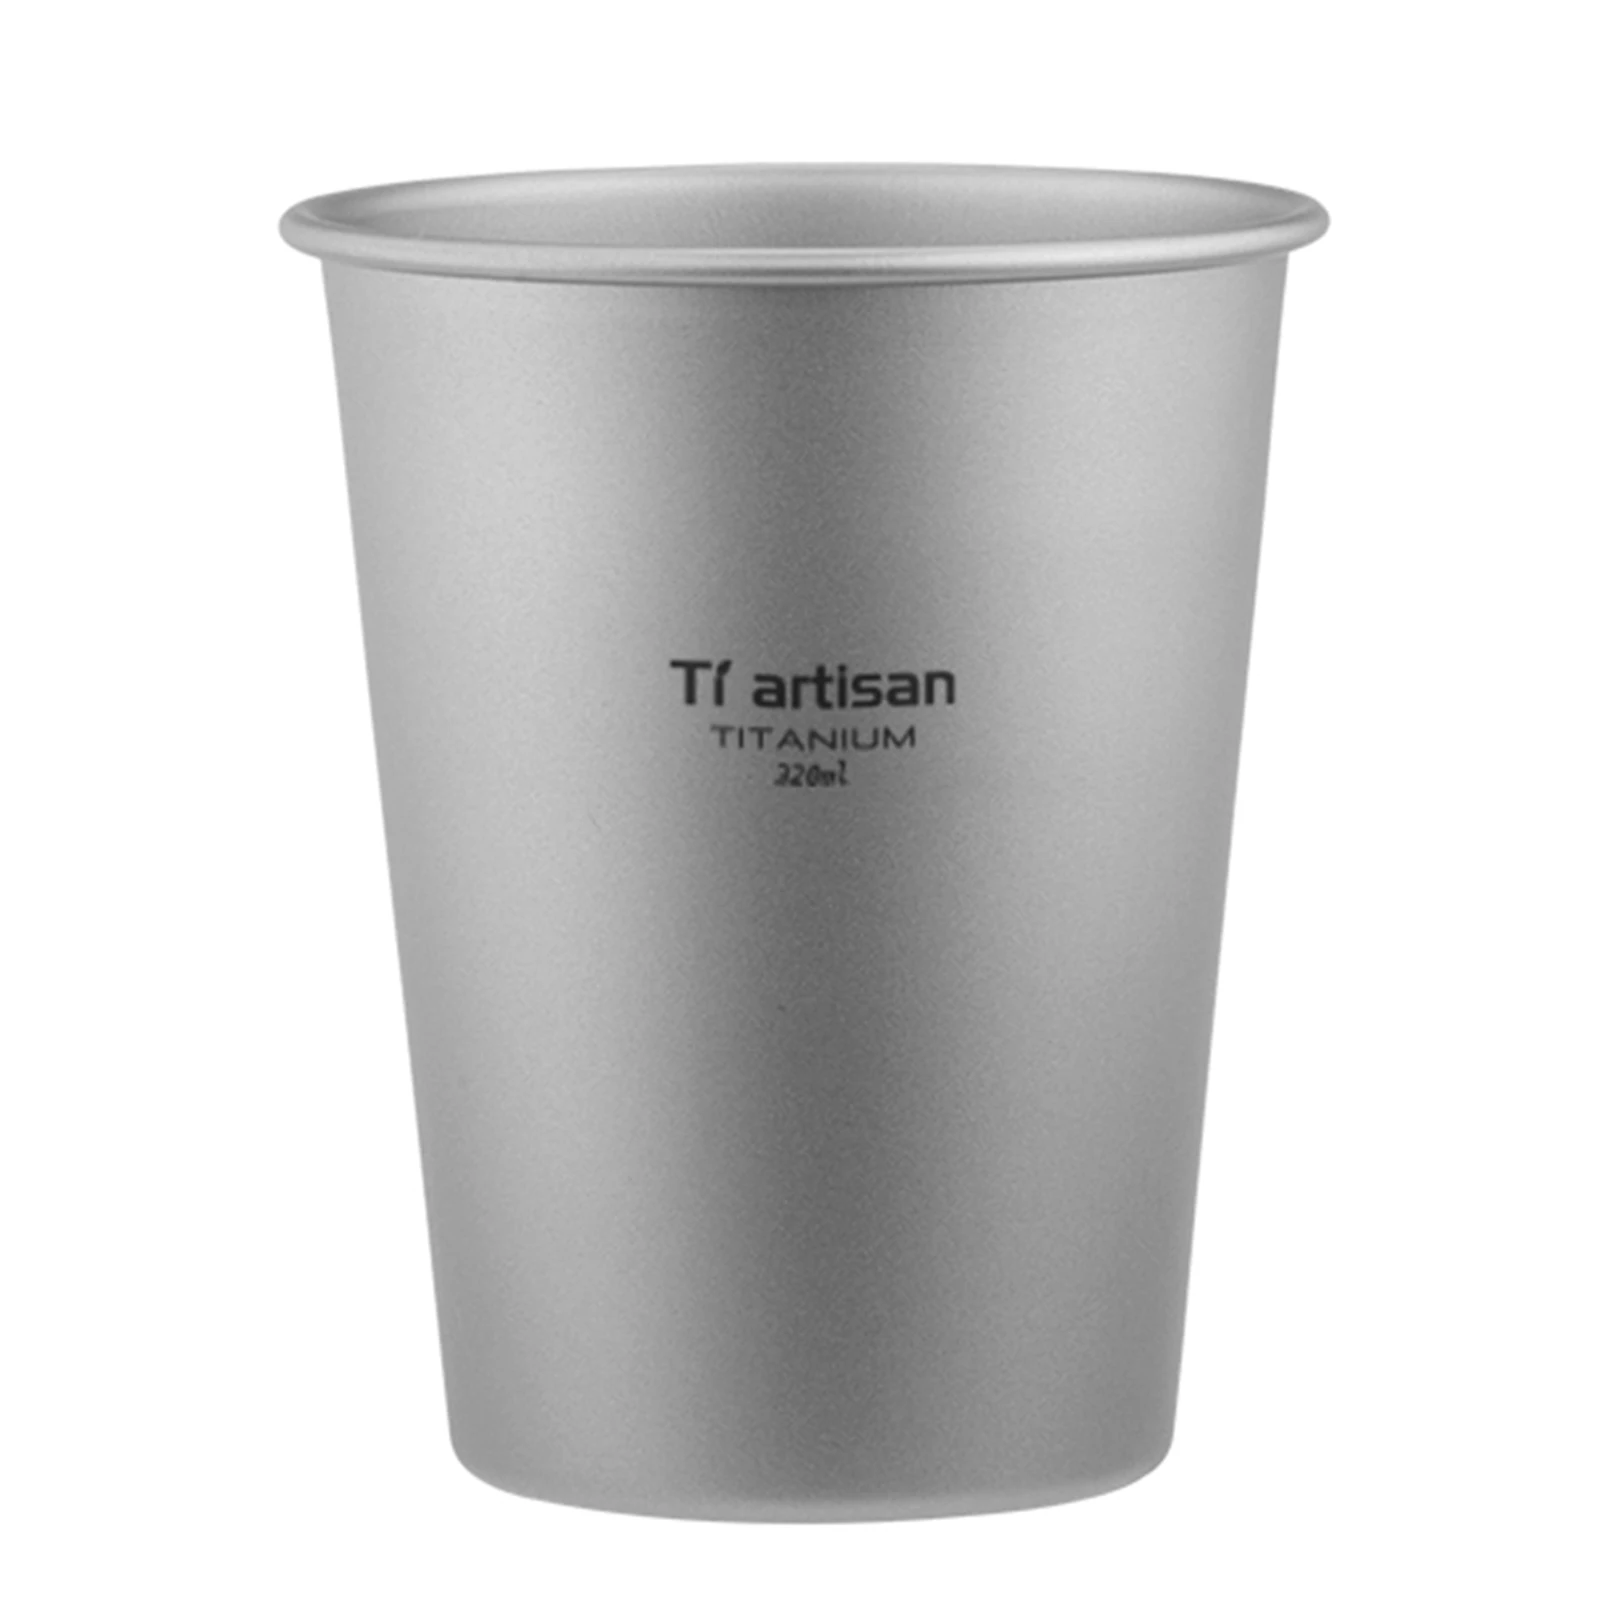 

Портативная титановая пивная чашка, прочная и легкая, идеально подходит для кемпинга и домашнего использования, устойчива к высоким и низким температурам